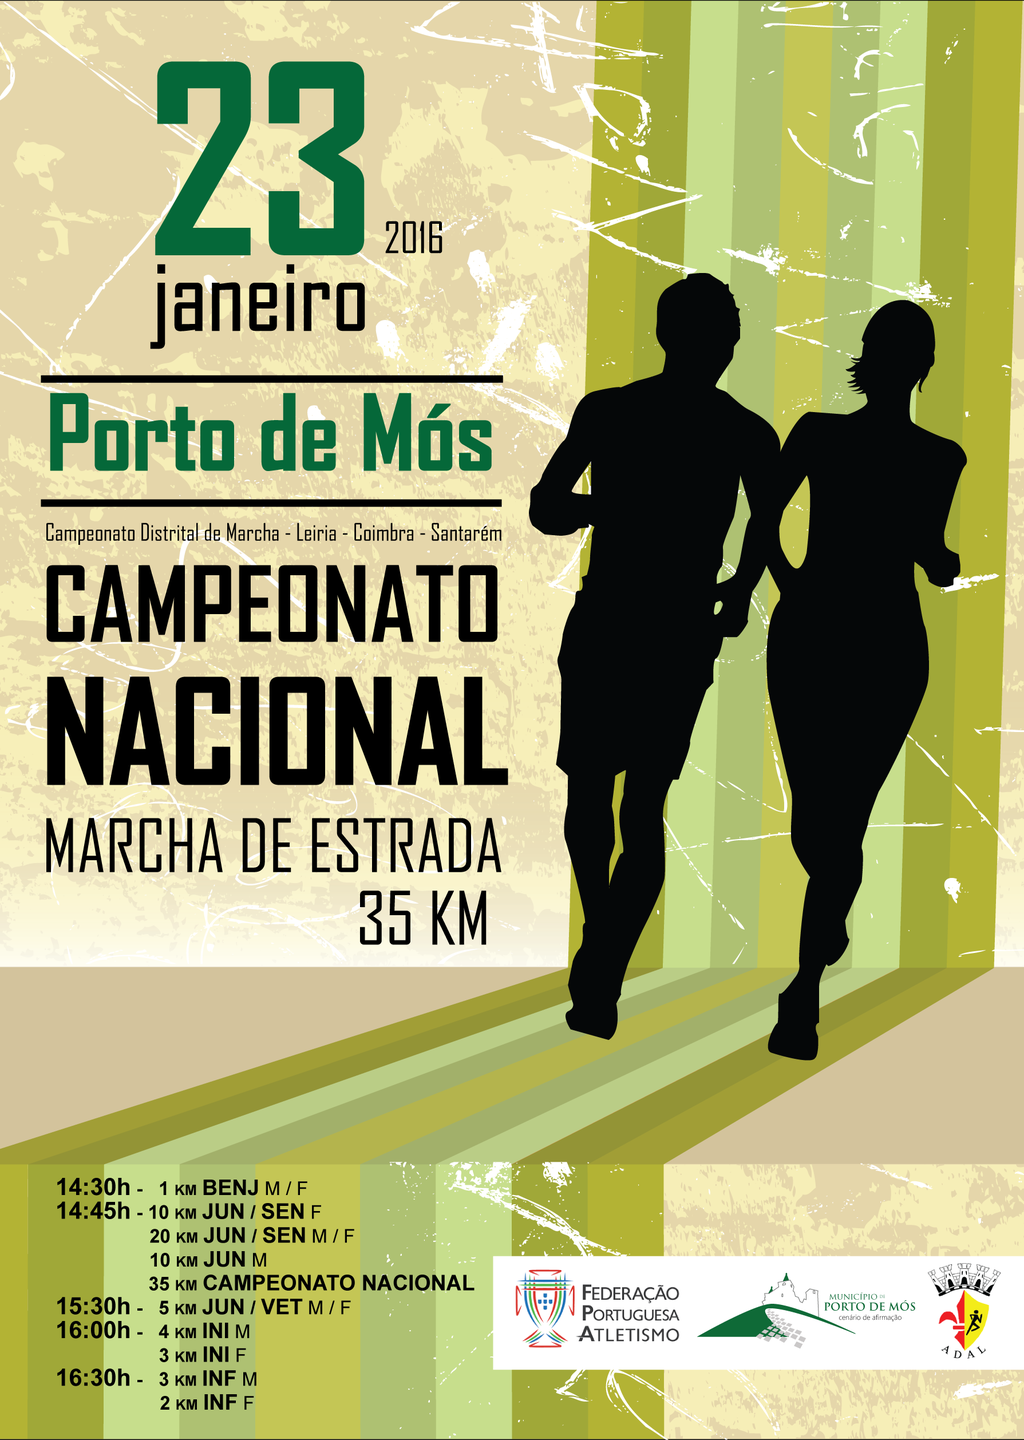 Campeonato Nacional de Marcha de Estrada